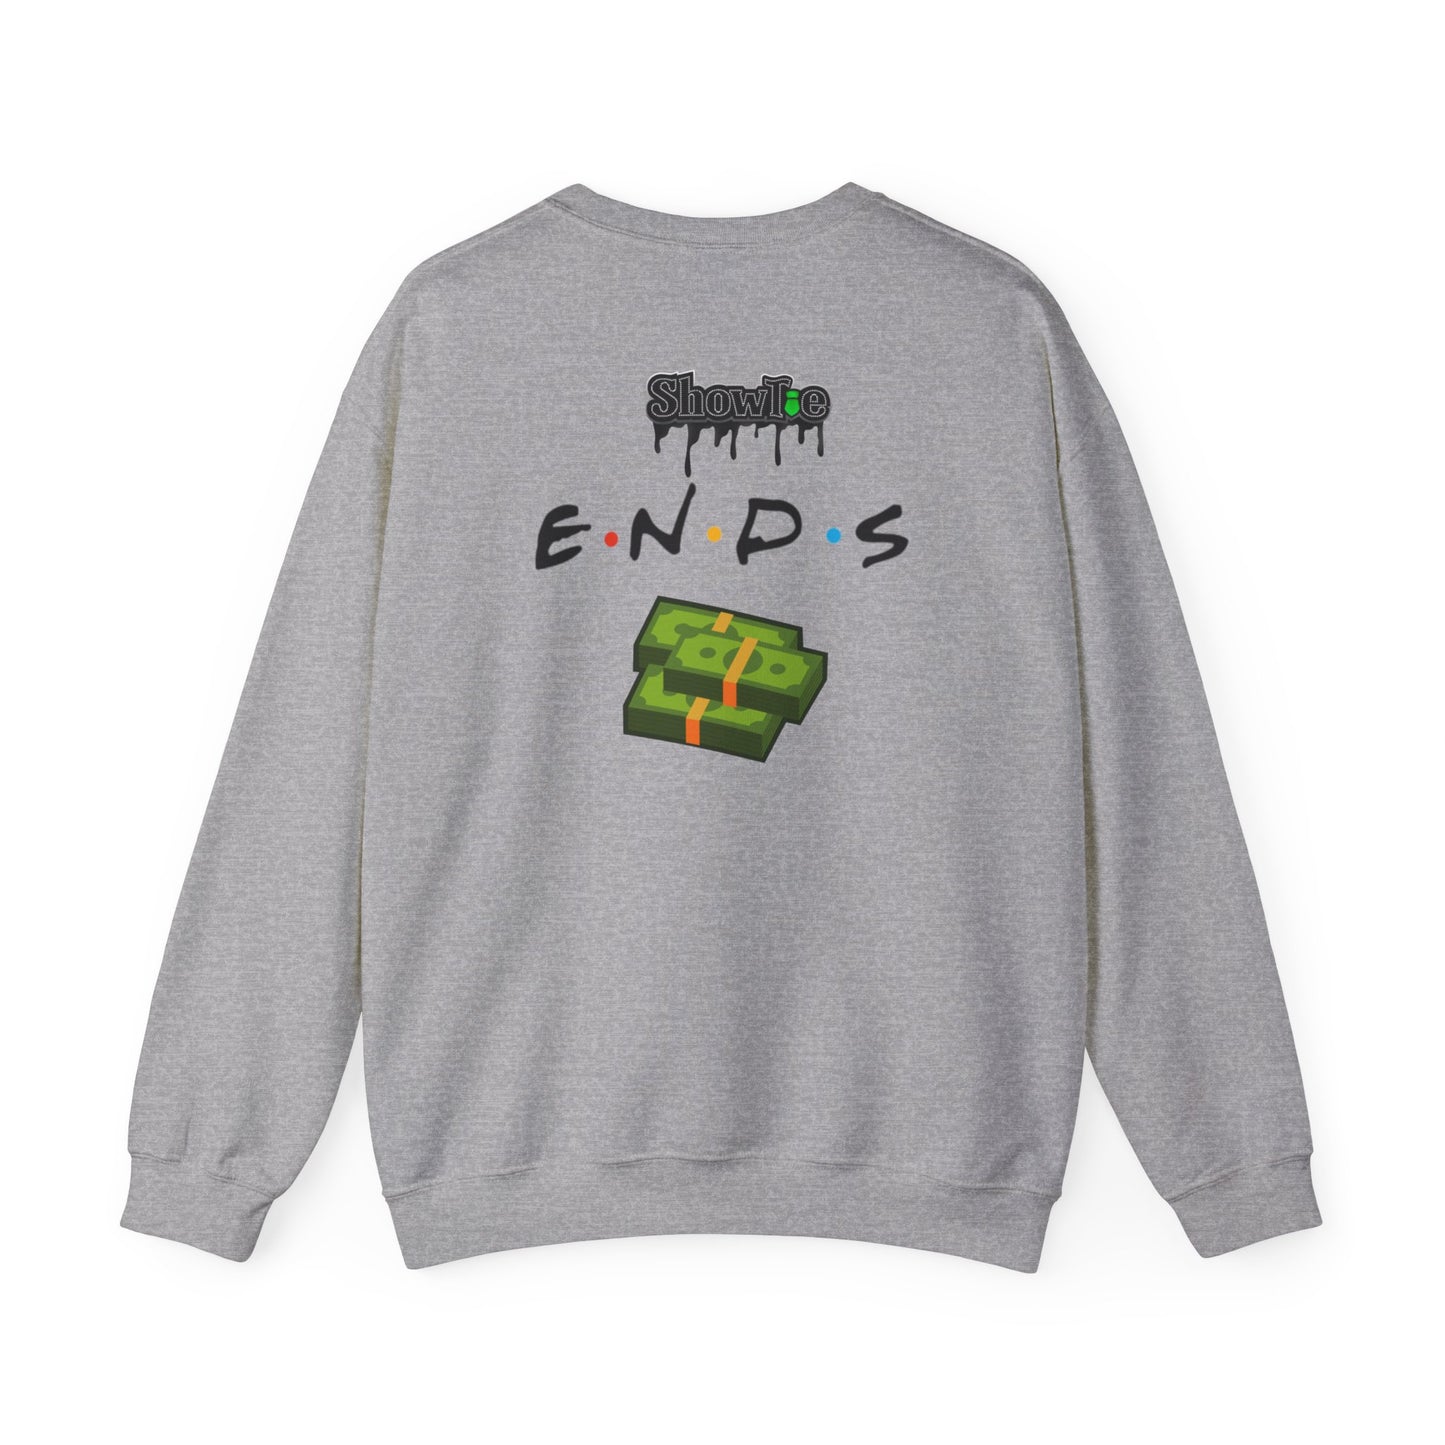 Showtie ENDS Sweatshirt